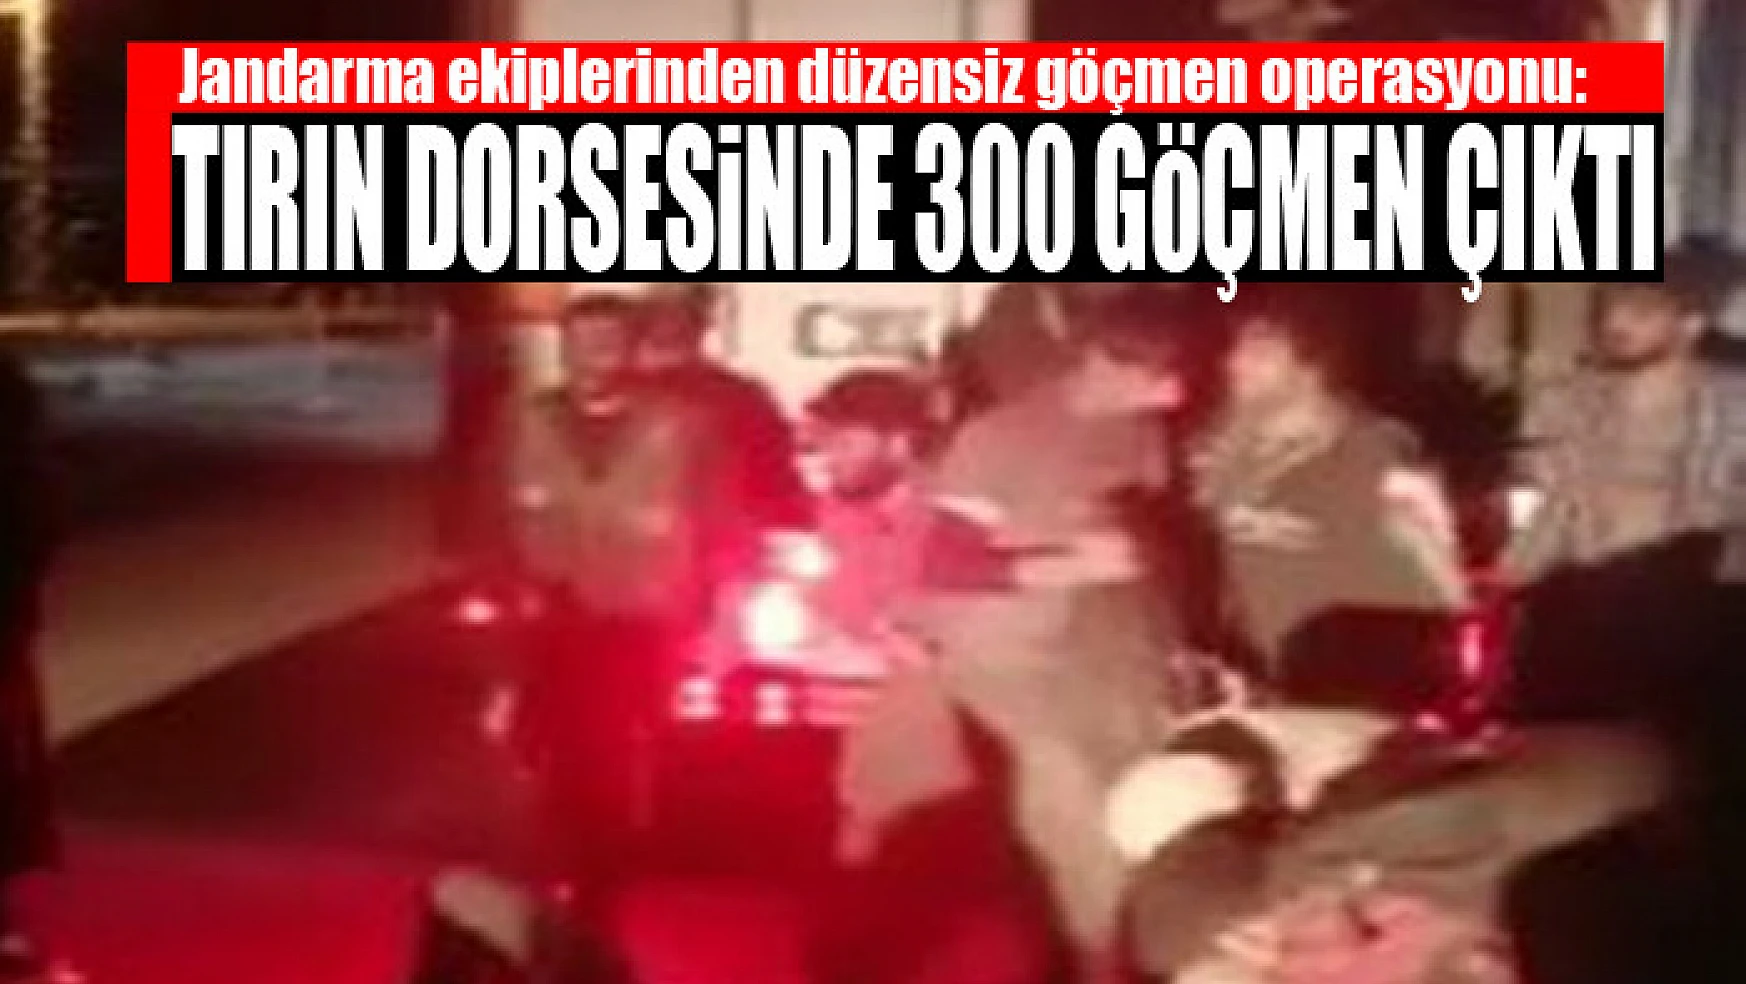 Jandarma ekiplerinden düzensiz göçmen operasyonu: Tırın dorsesinde 300 göçmen çıktı